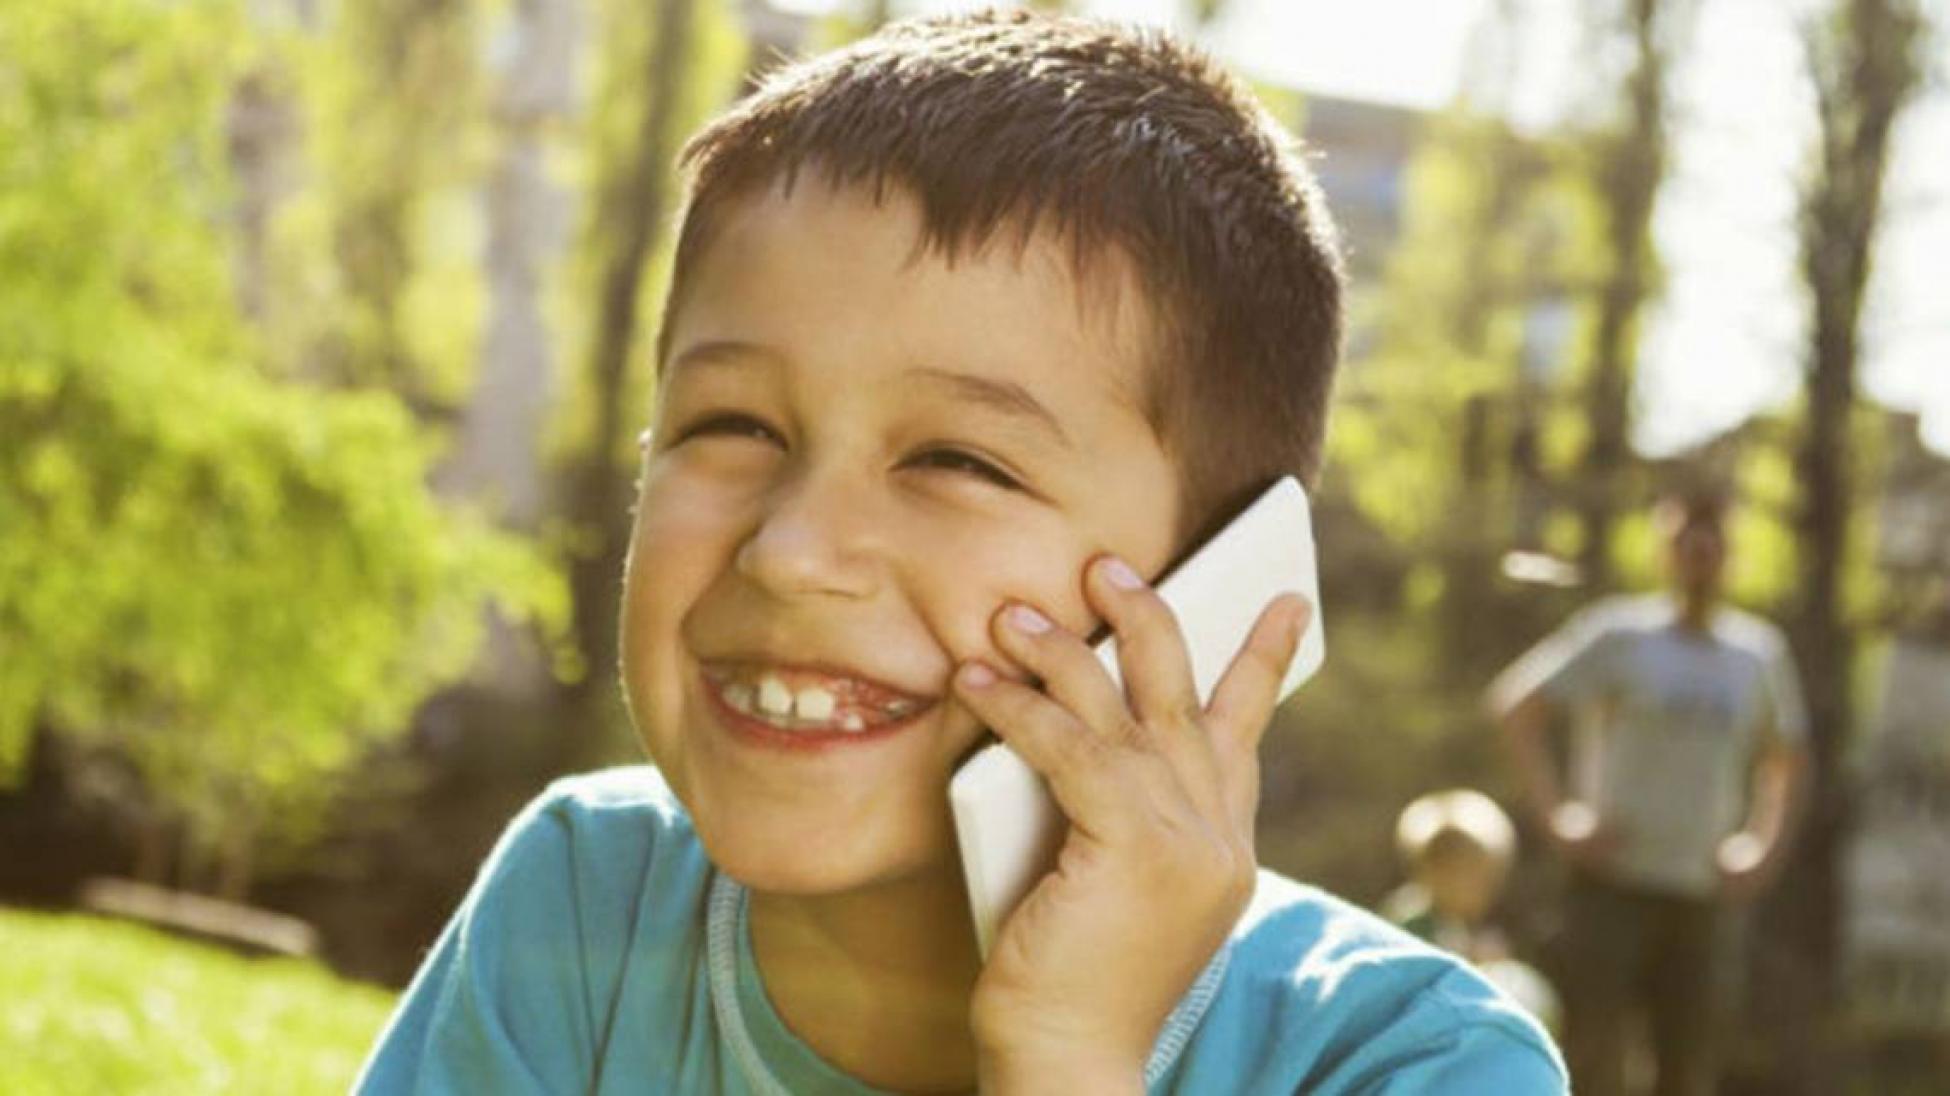 ▷ Choisir un Téléphone pour votre Enfant [Guide du Parent]